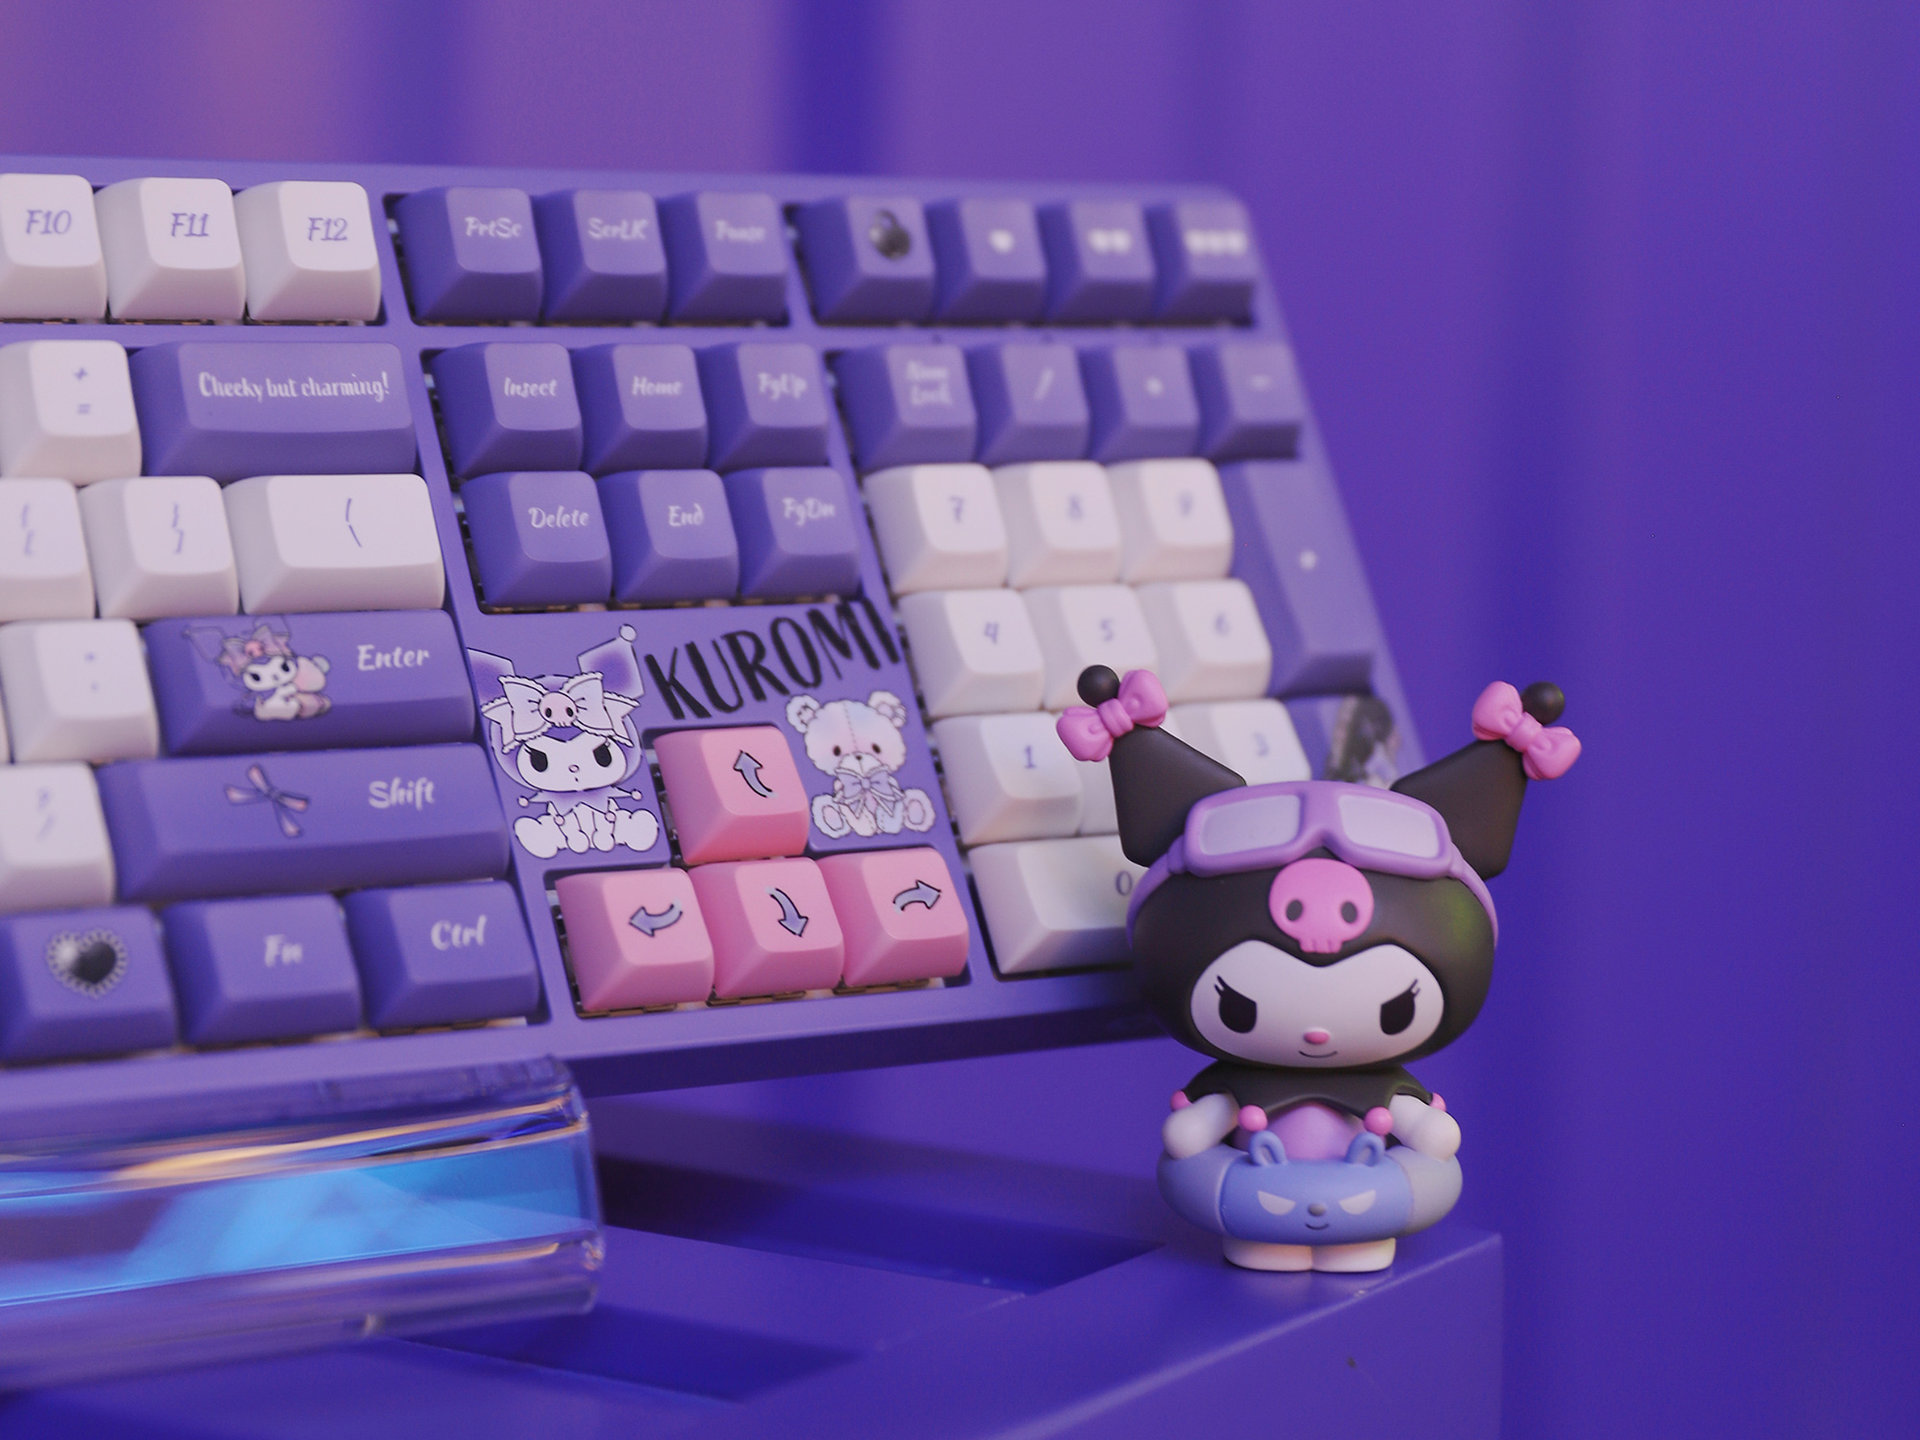 AKKO Kuromi Keyboard - Tapelf